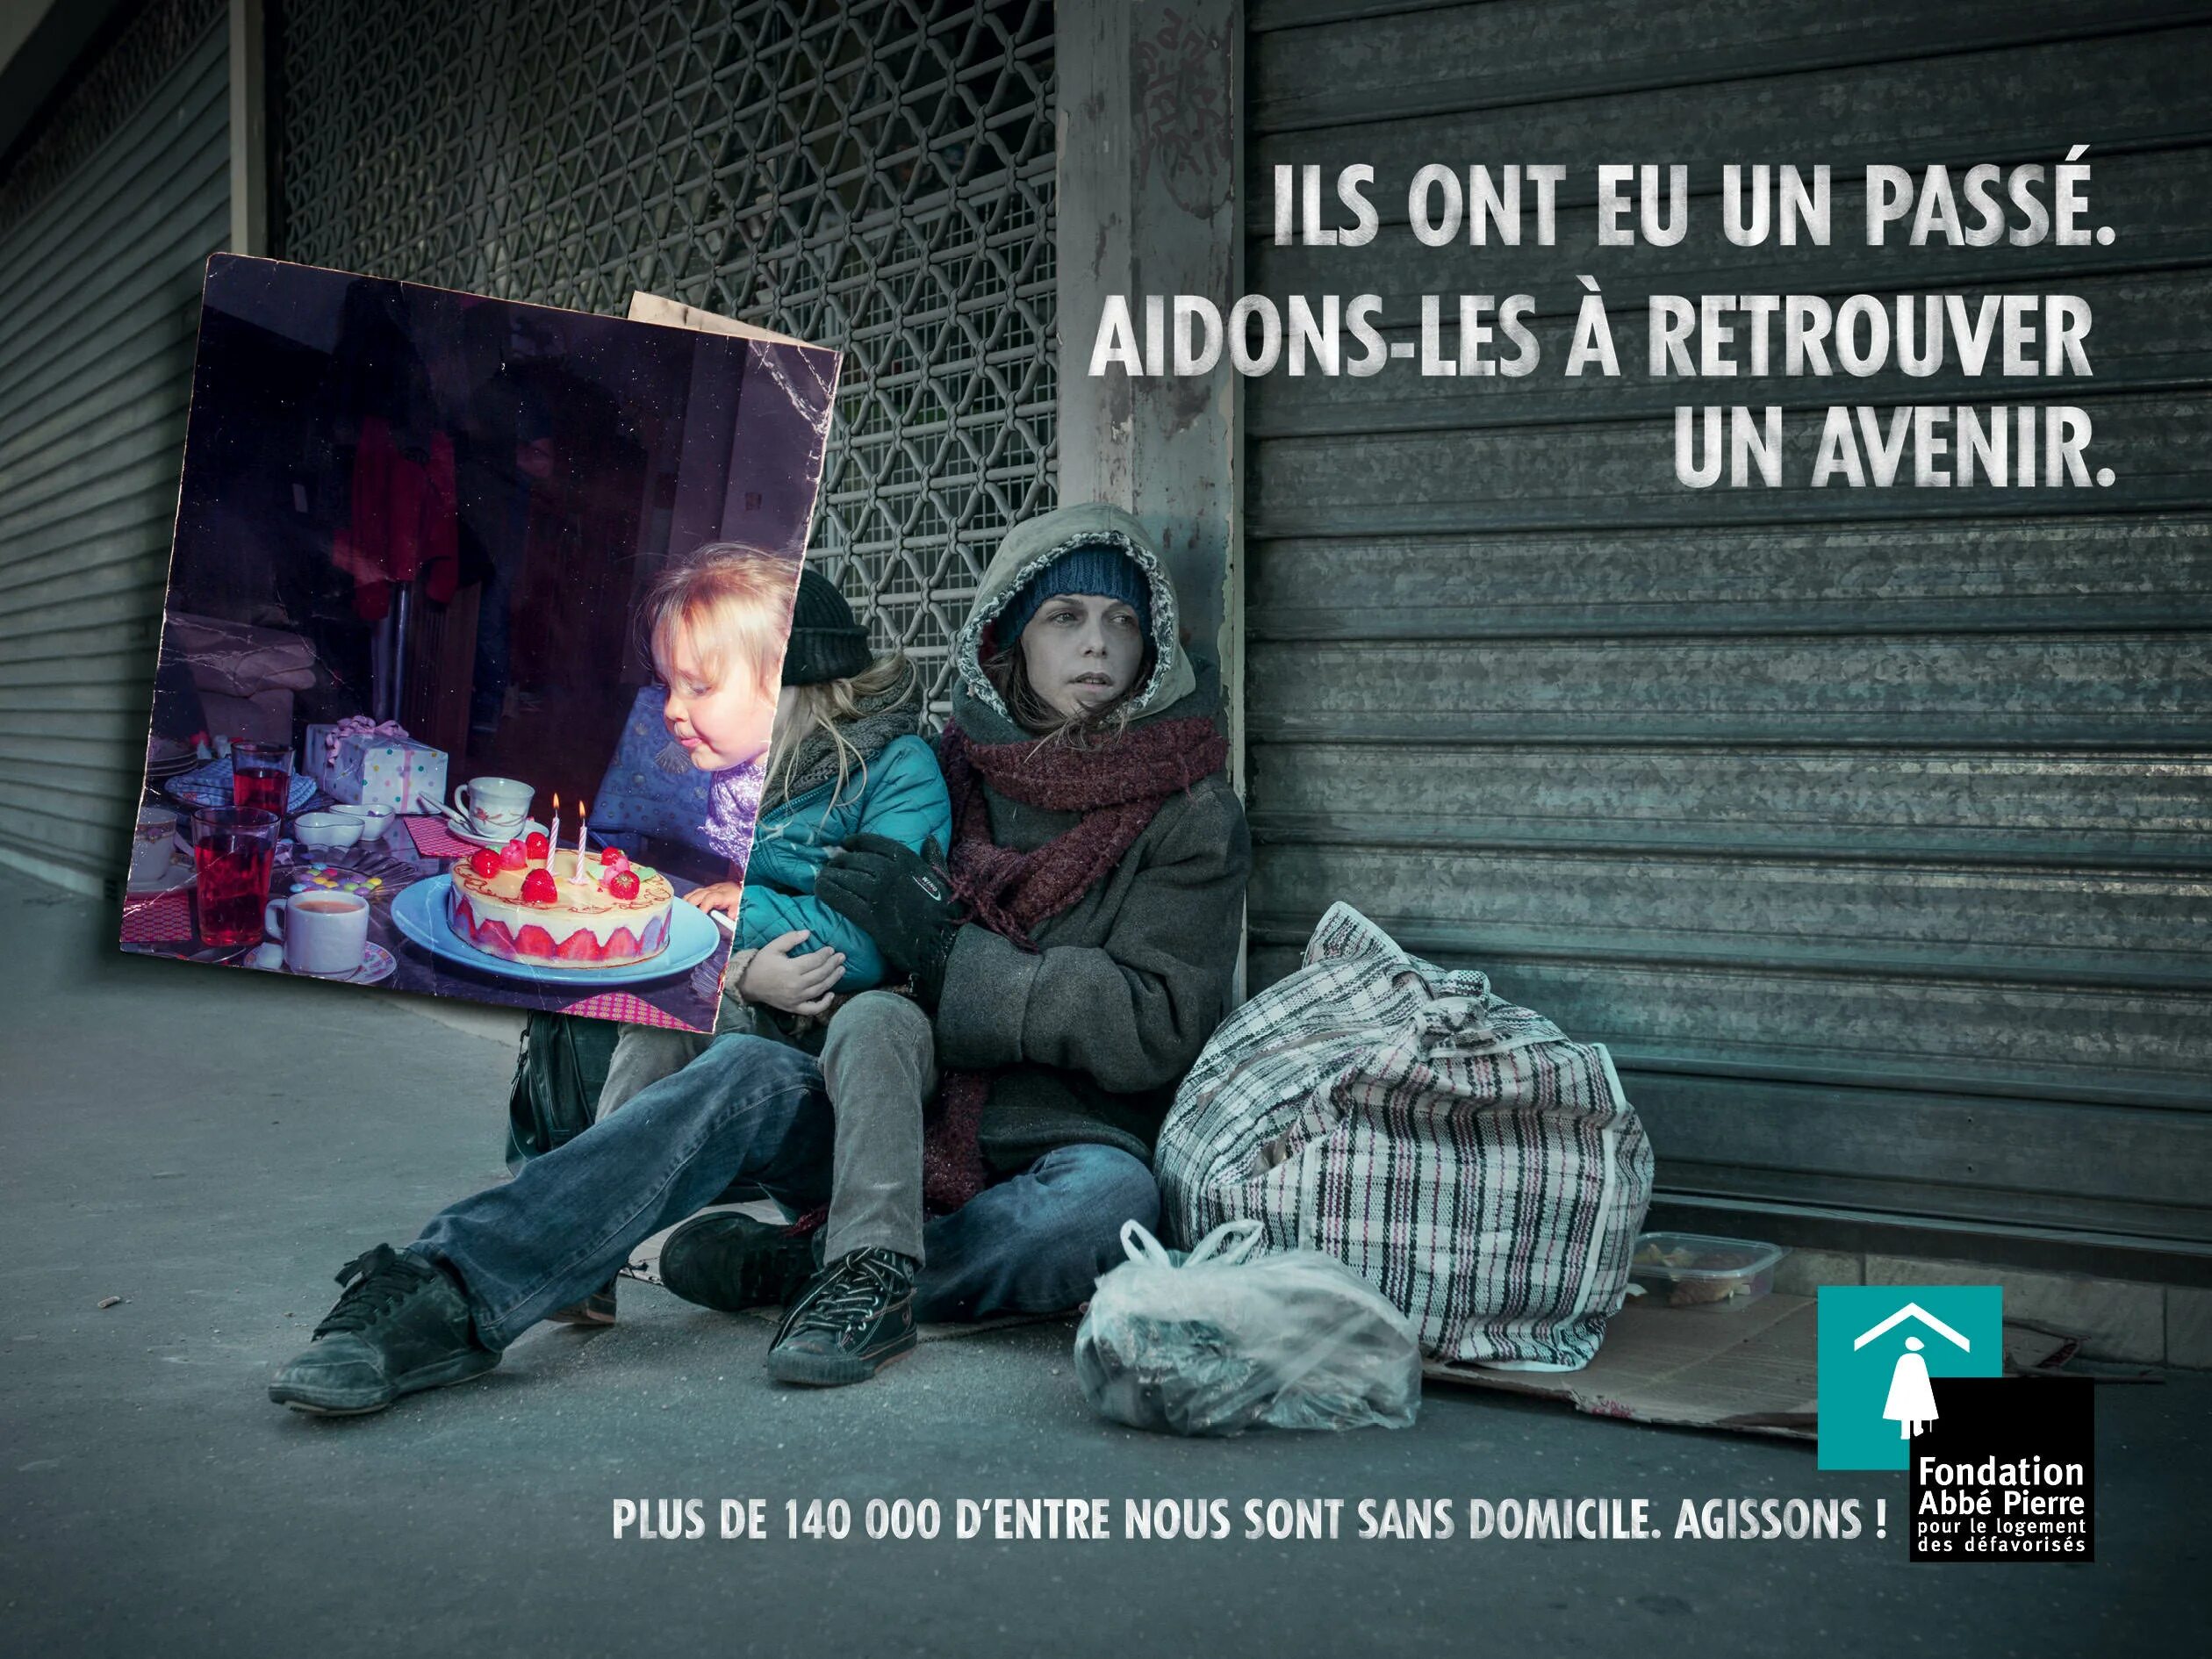 Реклама бомжа. Социальная реклама бездомные люди. Реклама про социальное неравенство. Реклама против бездомных людей. Социальная реклама о бездомных людях фото.